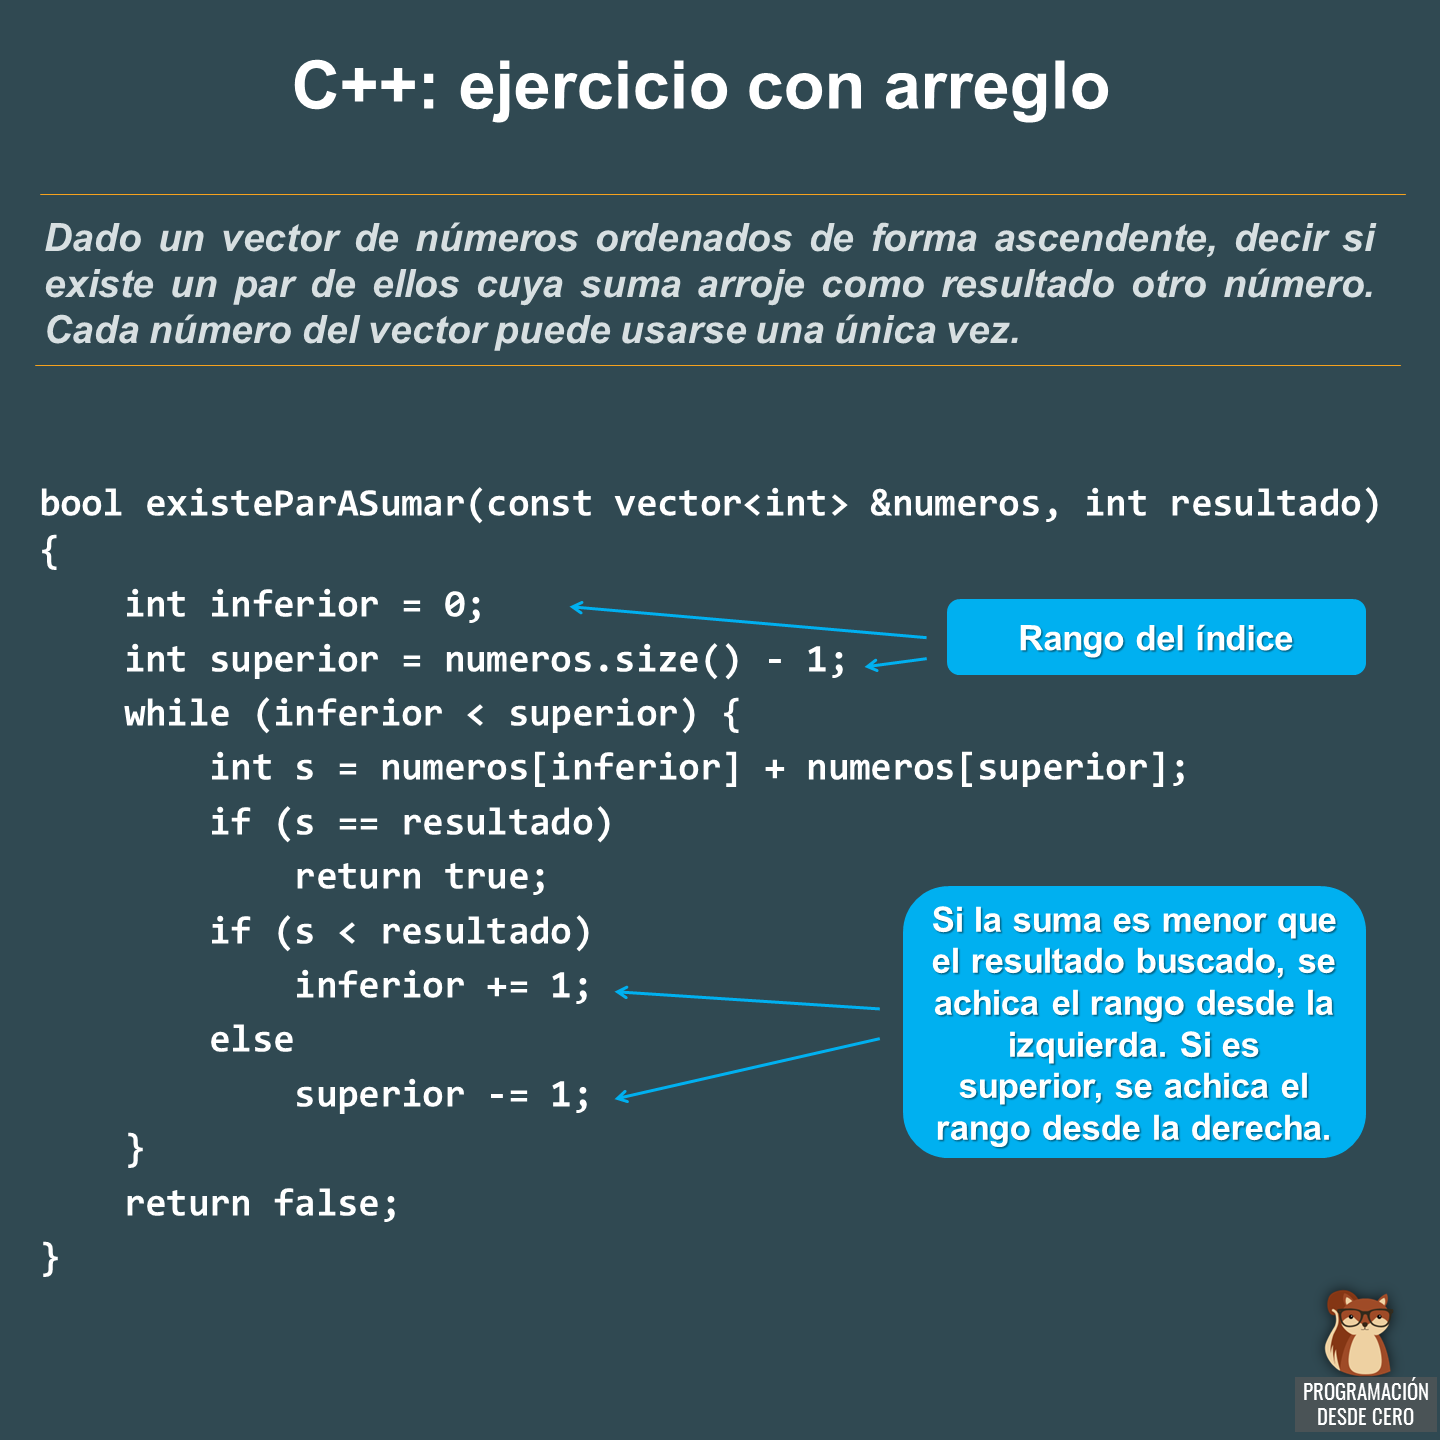 Ejercicio C++